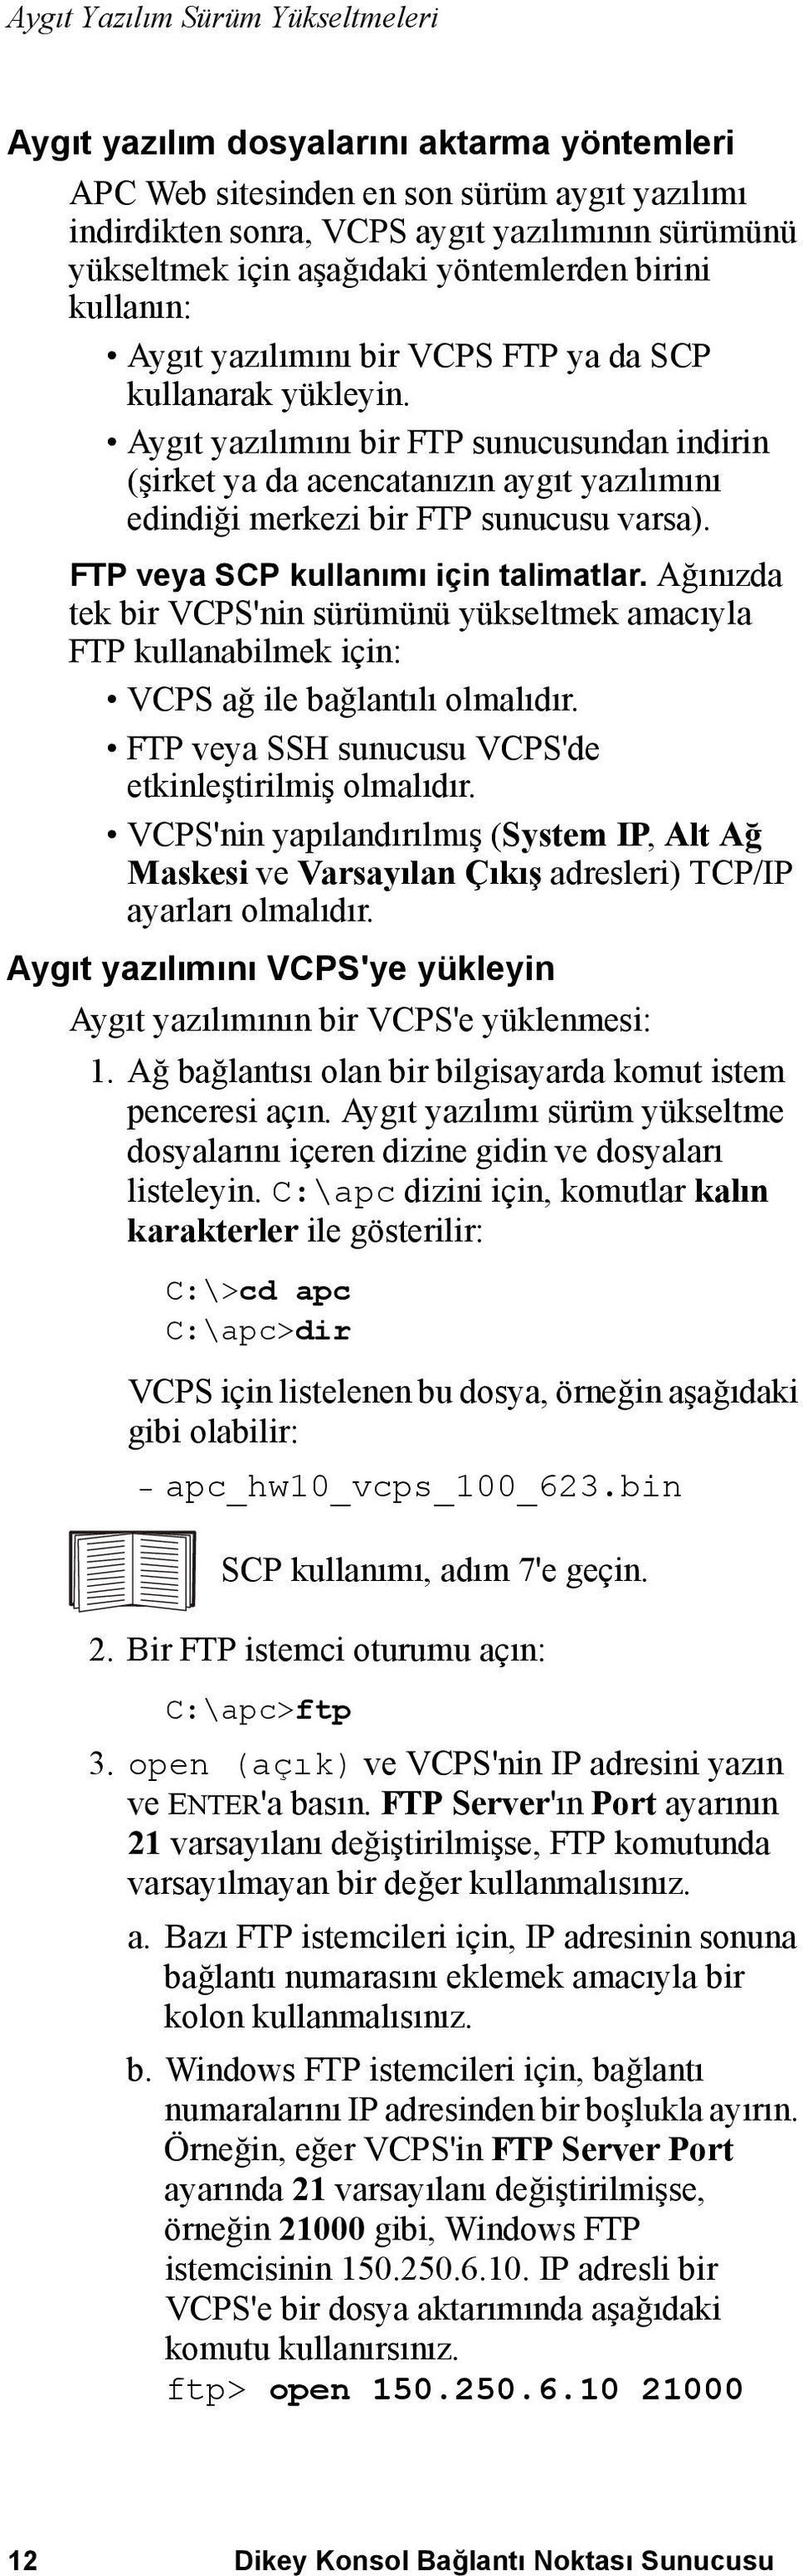 Aygıt yazılımını bir FTP sunucusundan indirin (şirket ya da acencatanızın aygıt yazılımını edindiği merkezi bir FTP sunucusu varsa). FTP veya SCP kullanımı için talimatlar.